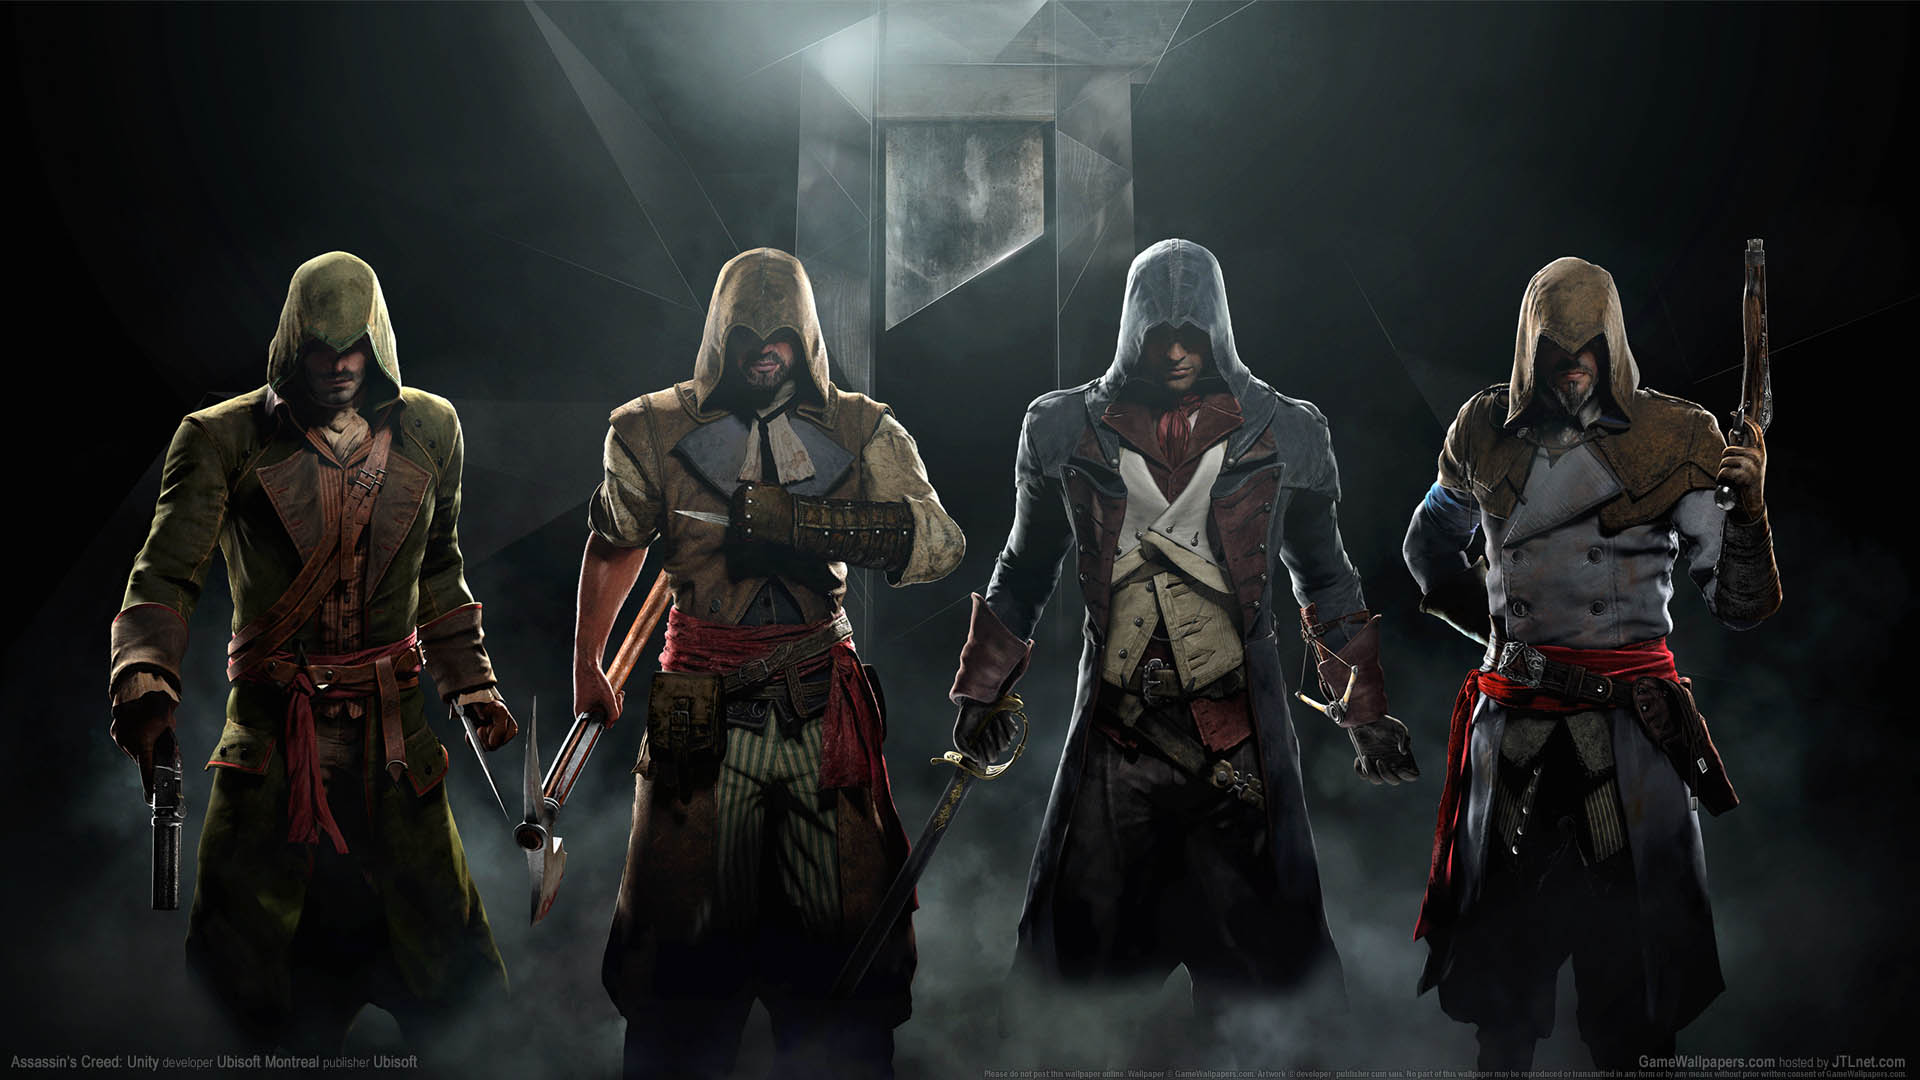 Assassin's Creed: Unity fond d'cran 04 1920x1080